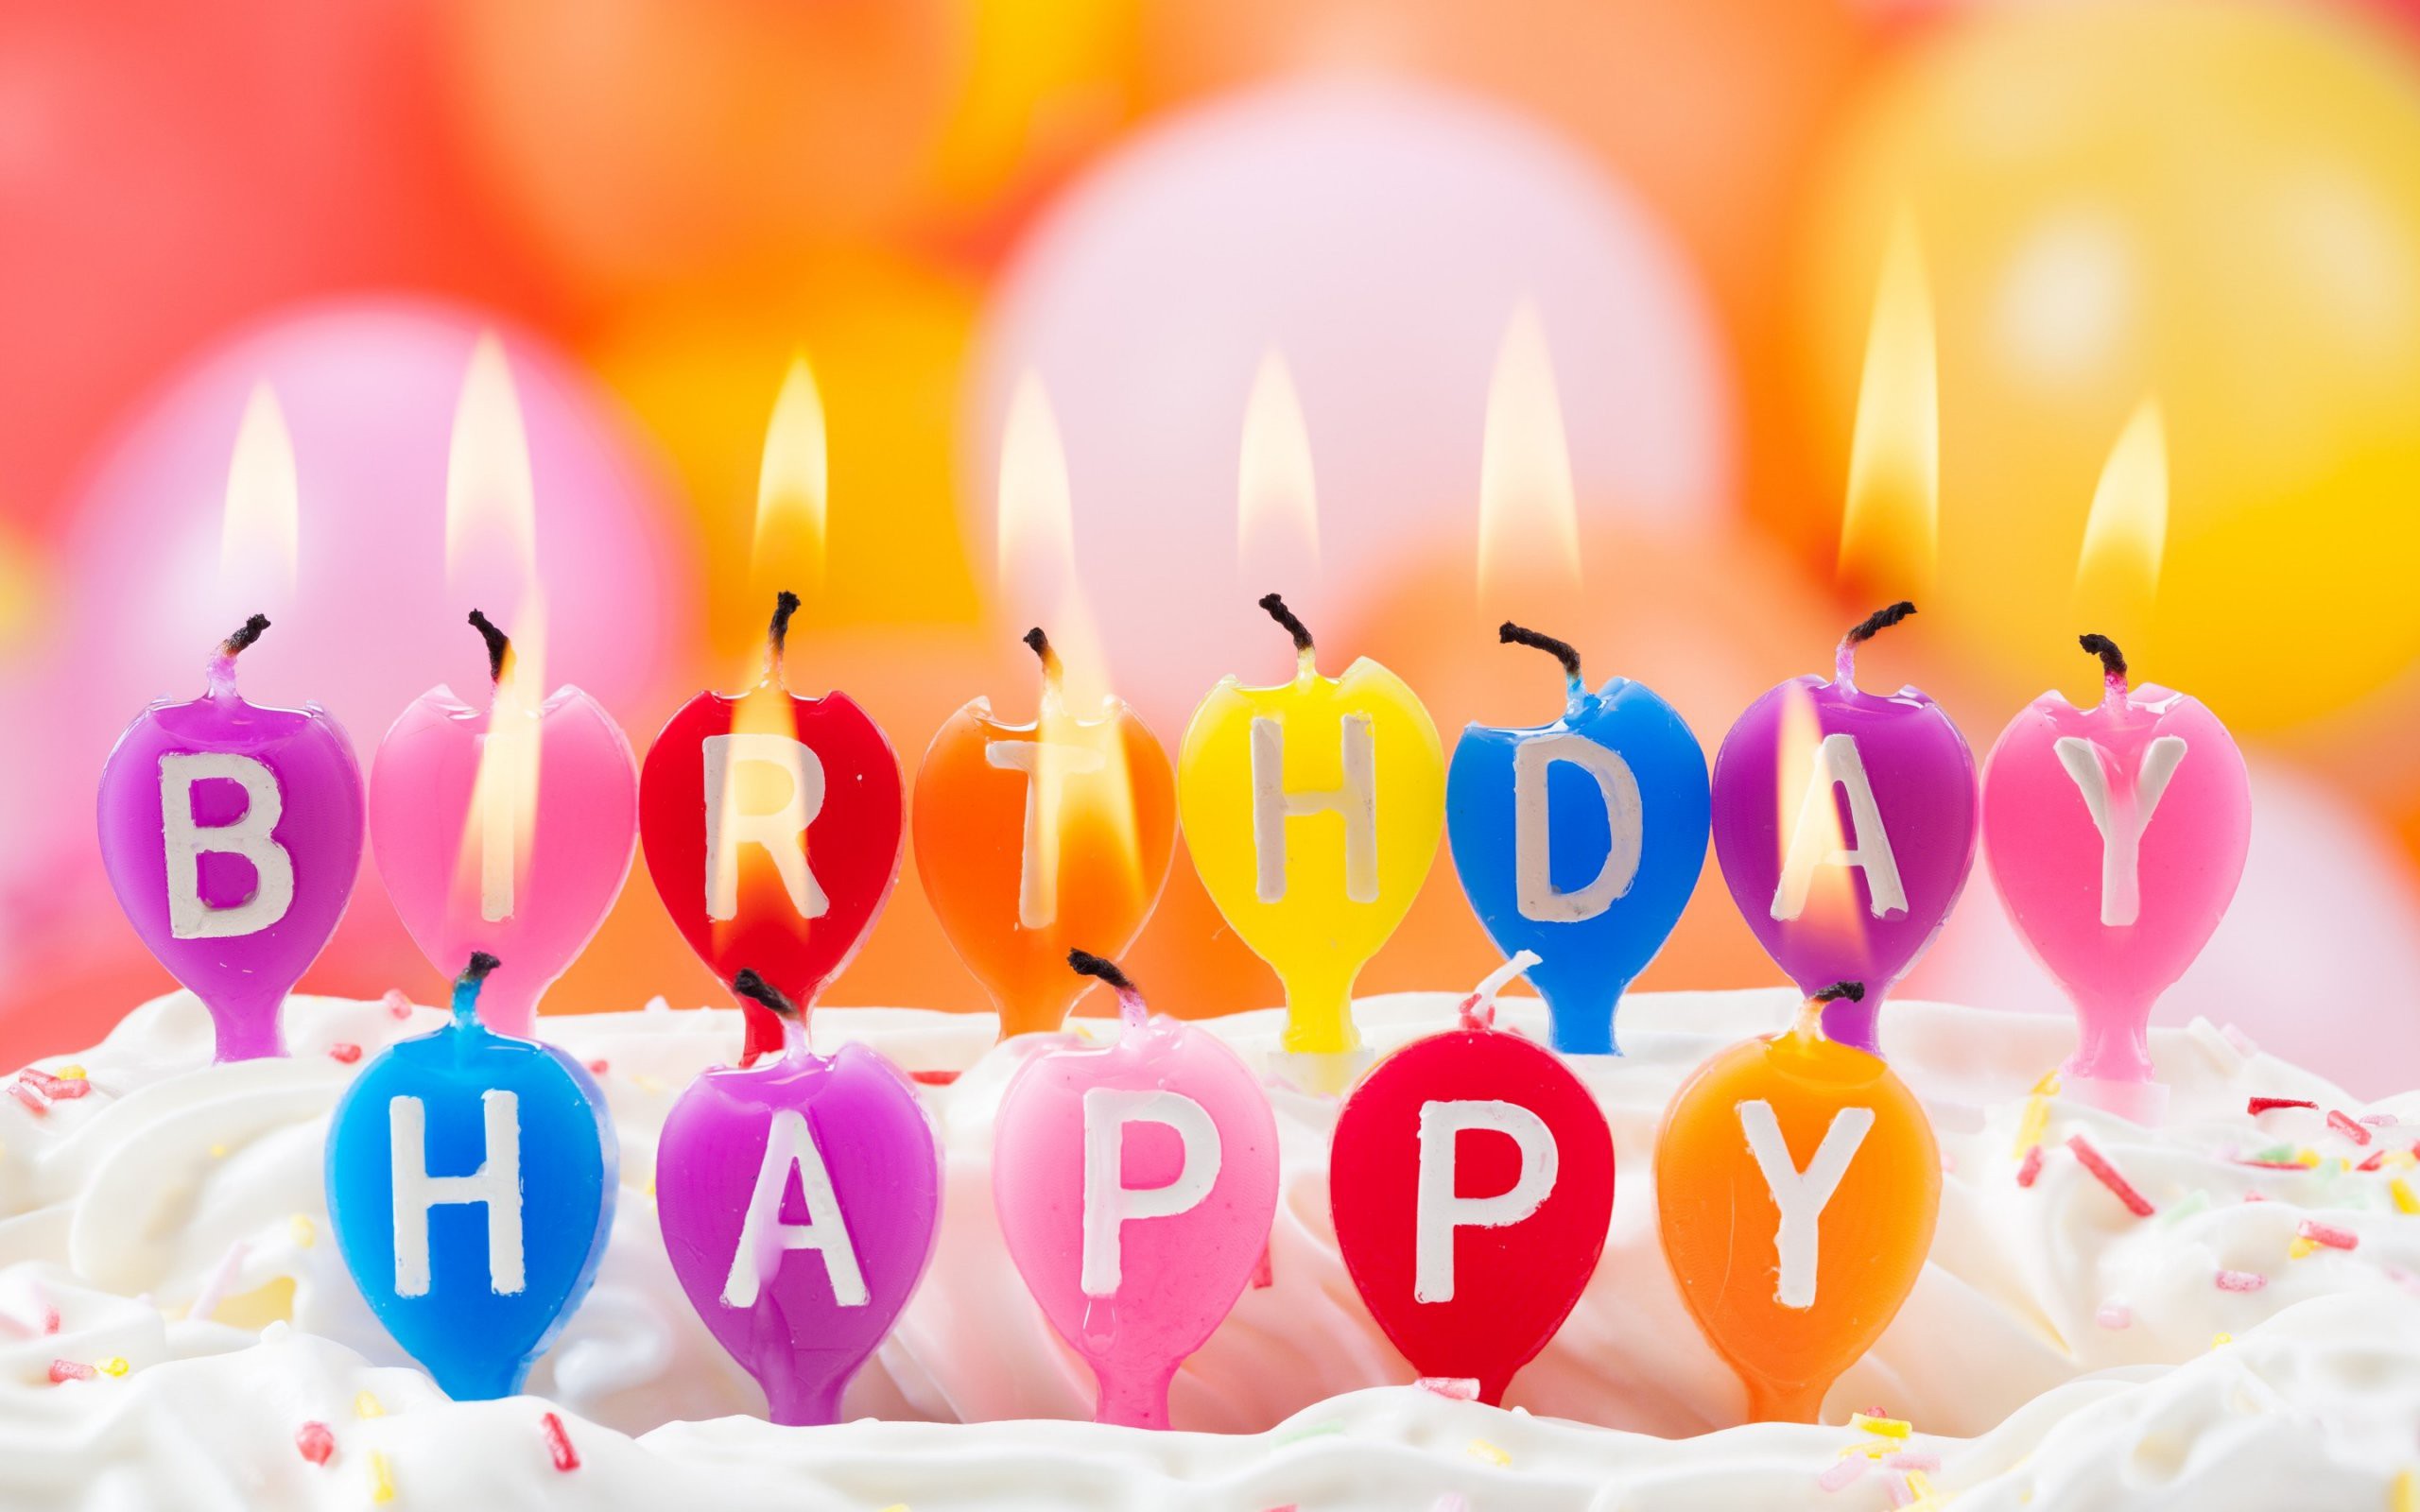 Tổng hợp 109 hình ảnh động chúc mừng sinh nhật đẹp cho bạn bè người thương   Up ảnh  Blog